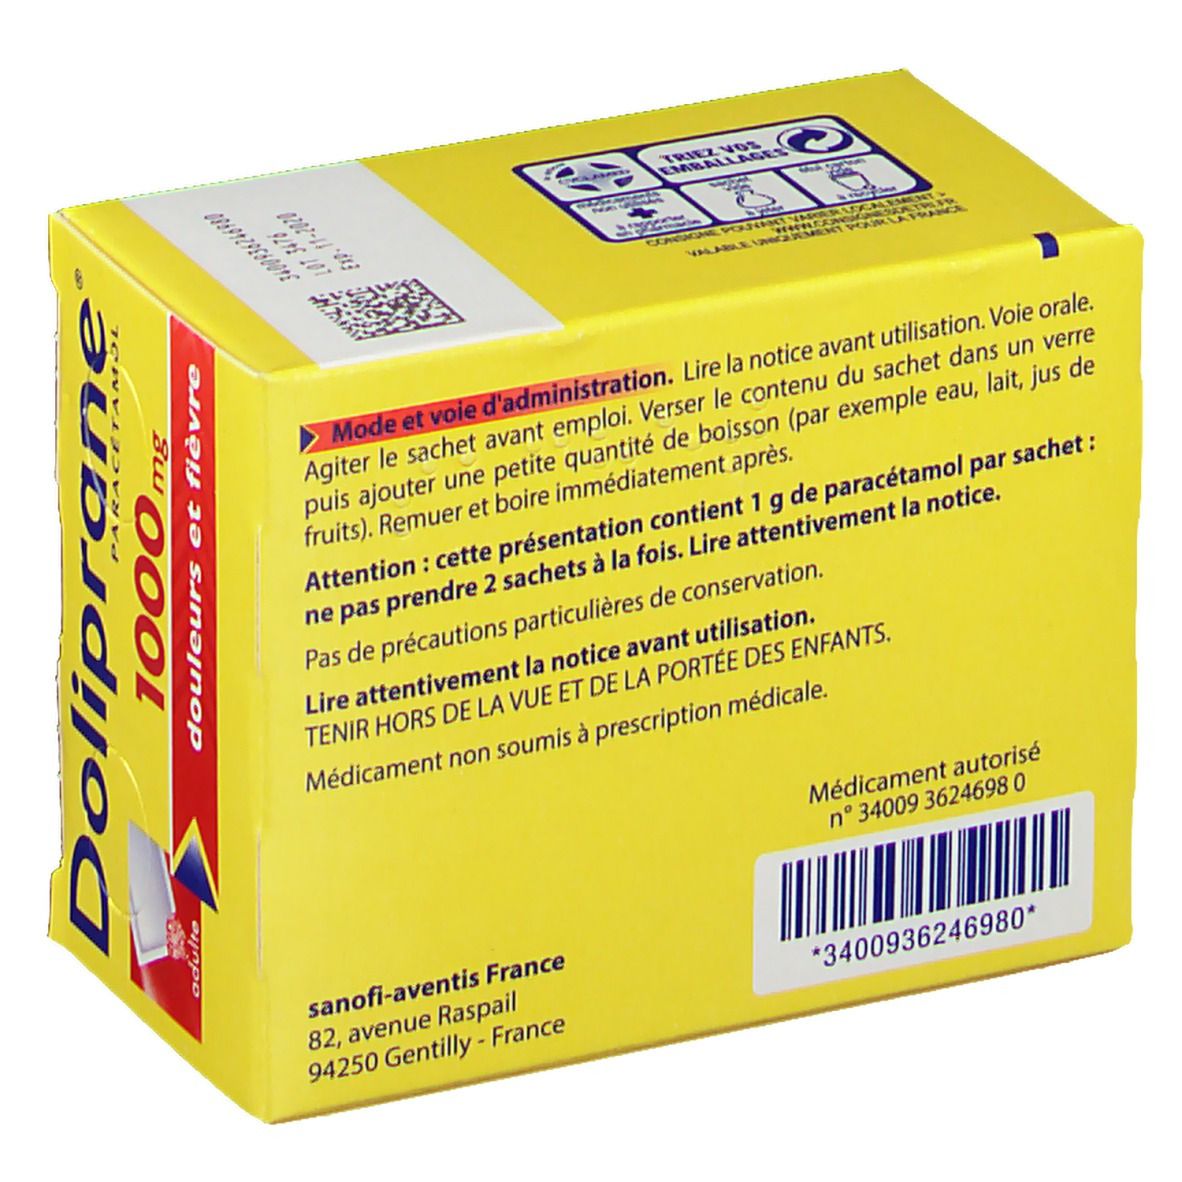 Doliprane® 1000 mg